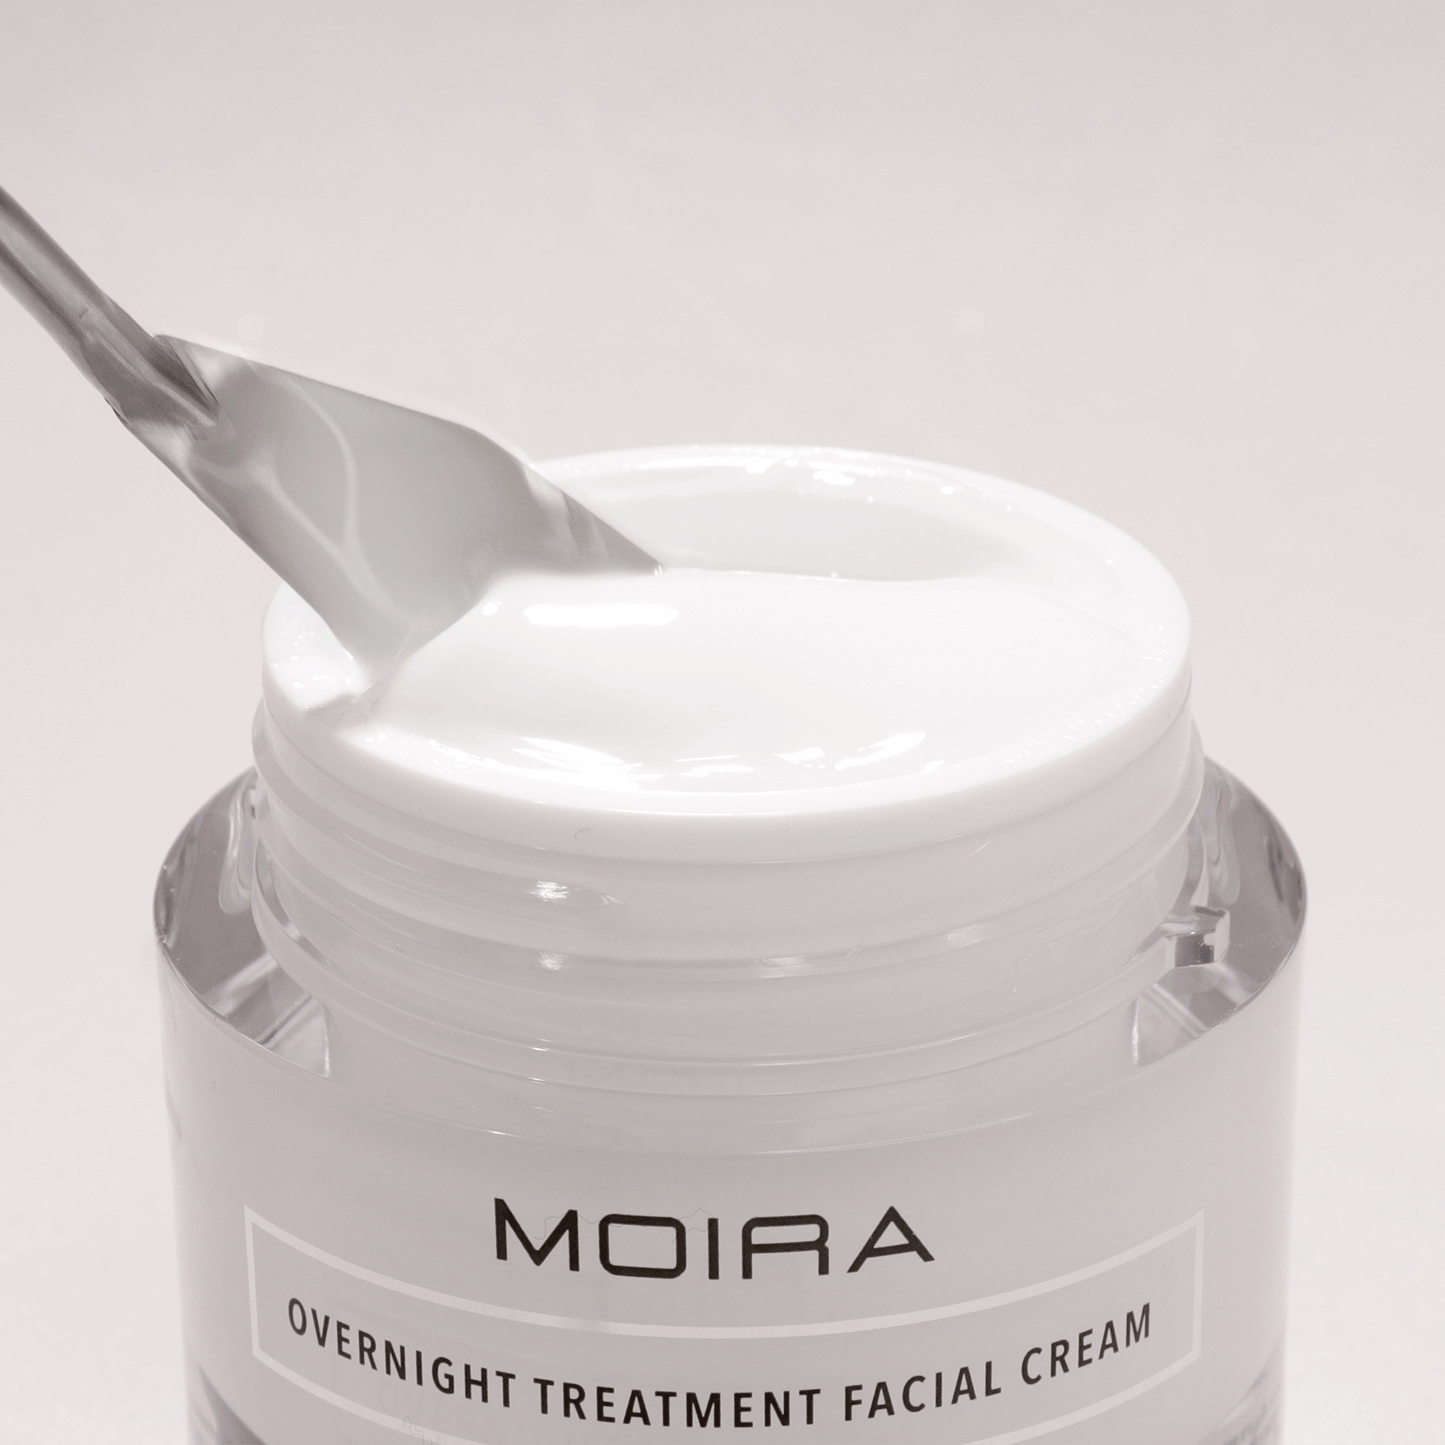 MOIRA - Overnight Treatment Facial Cream